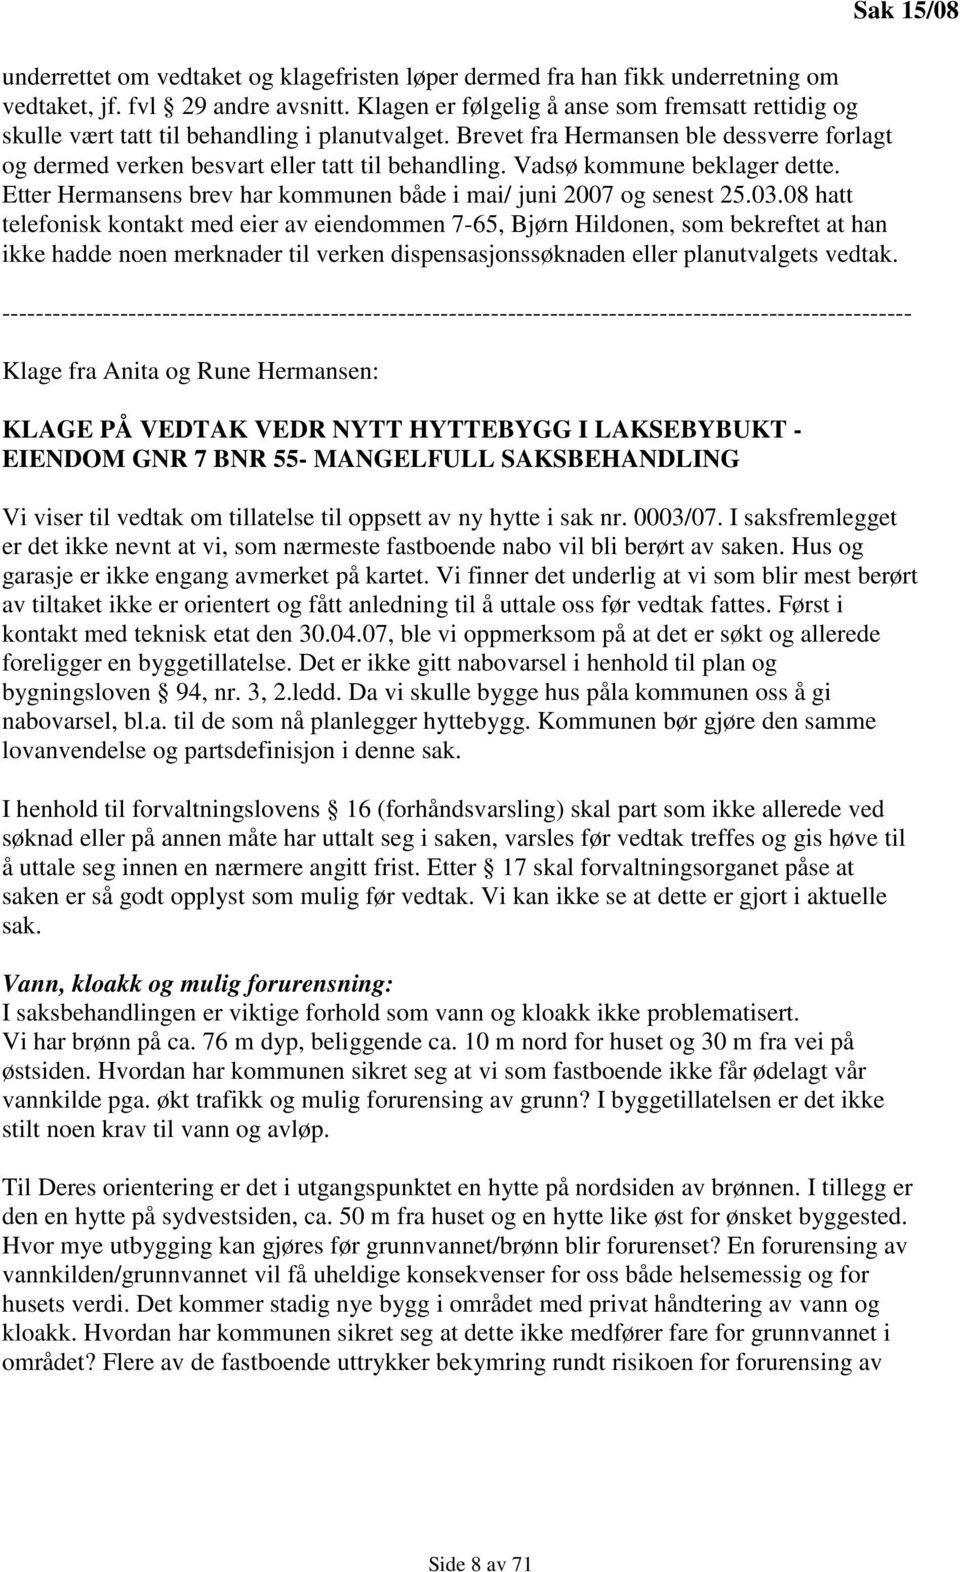 Vadsø kommune beklager dette. Etter Hermansens brev har kommunen både i mai/ juni 2007 og senest 25.03.